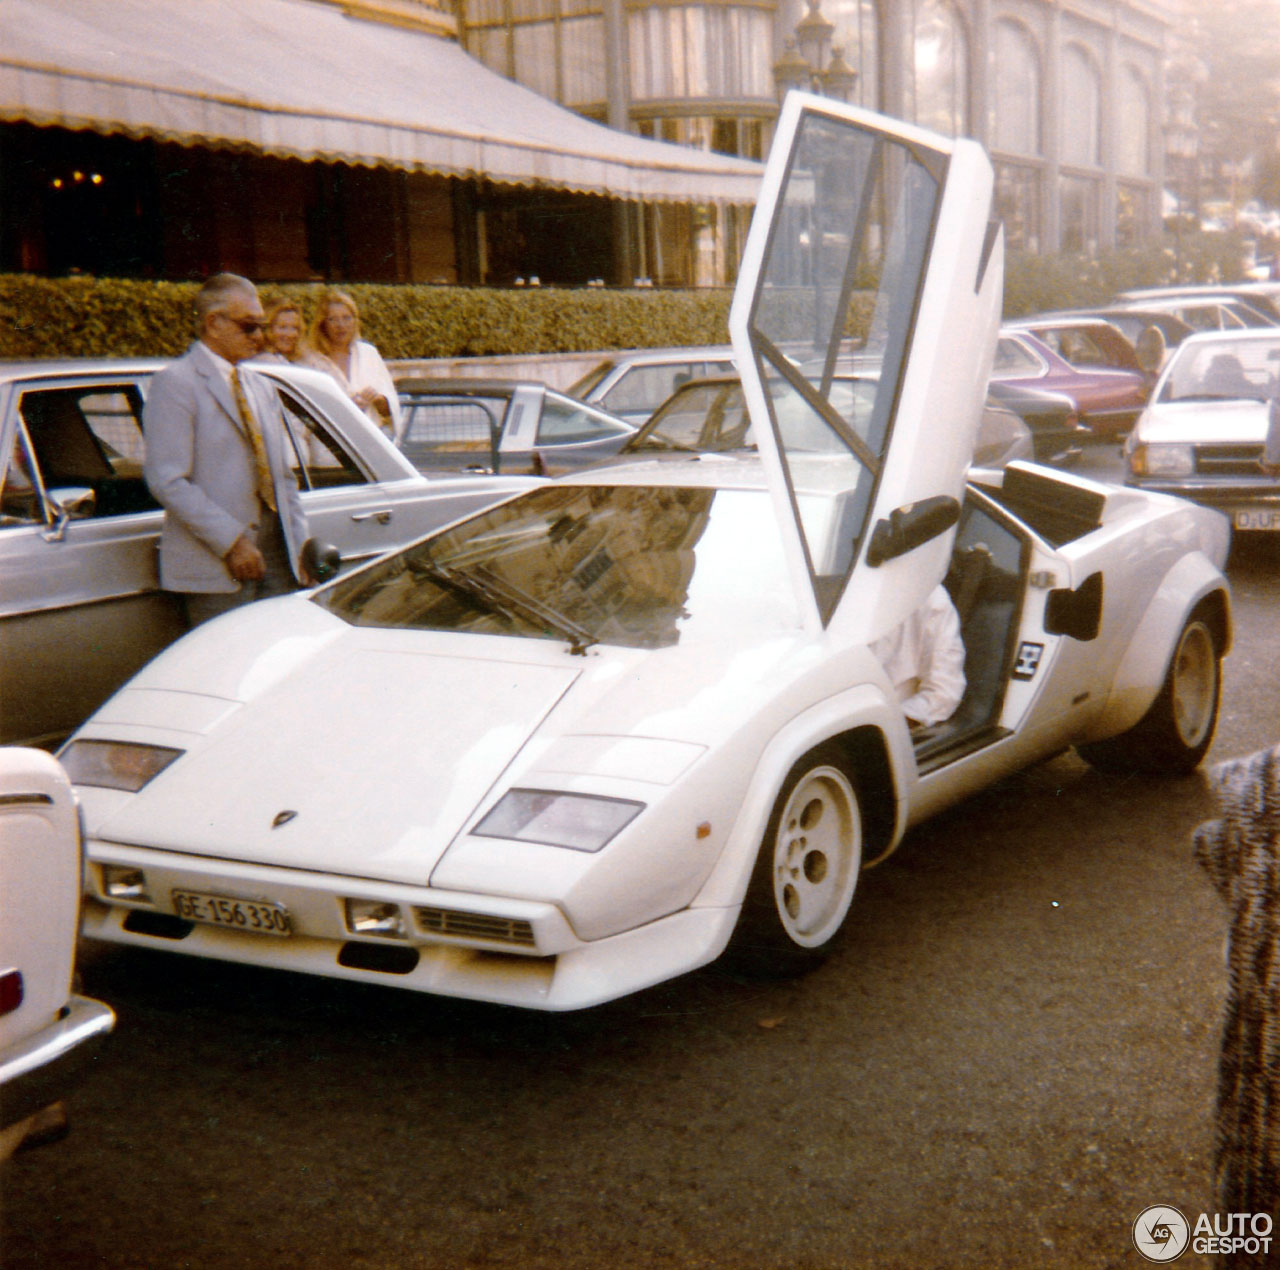 Terug naar het jaar 1981 met deze Lamborghini Countach